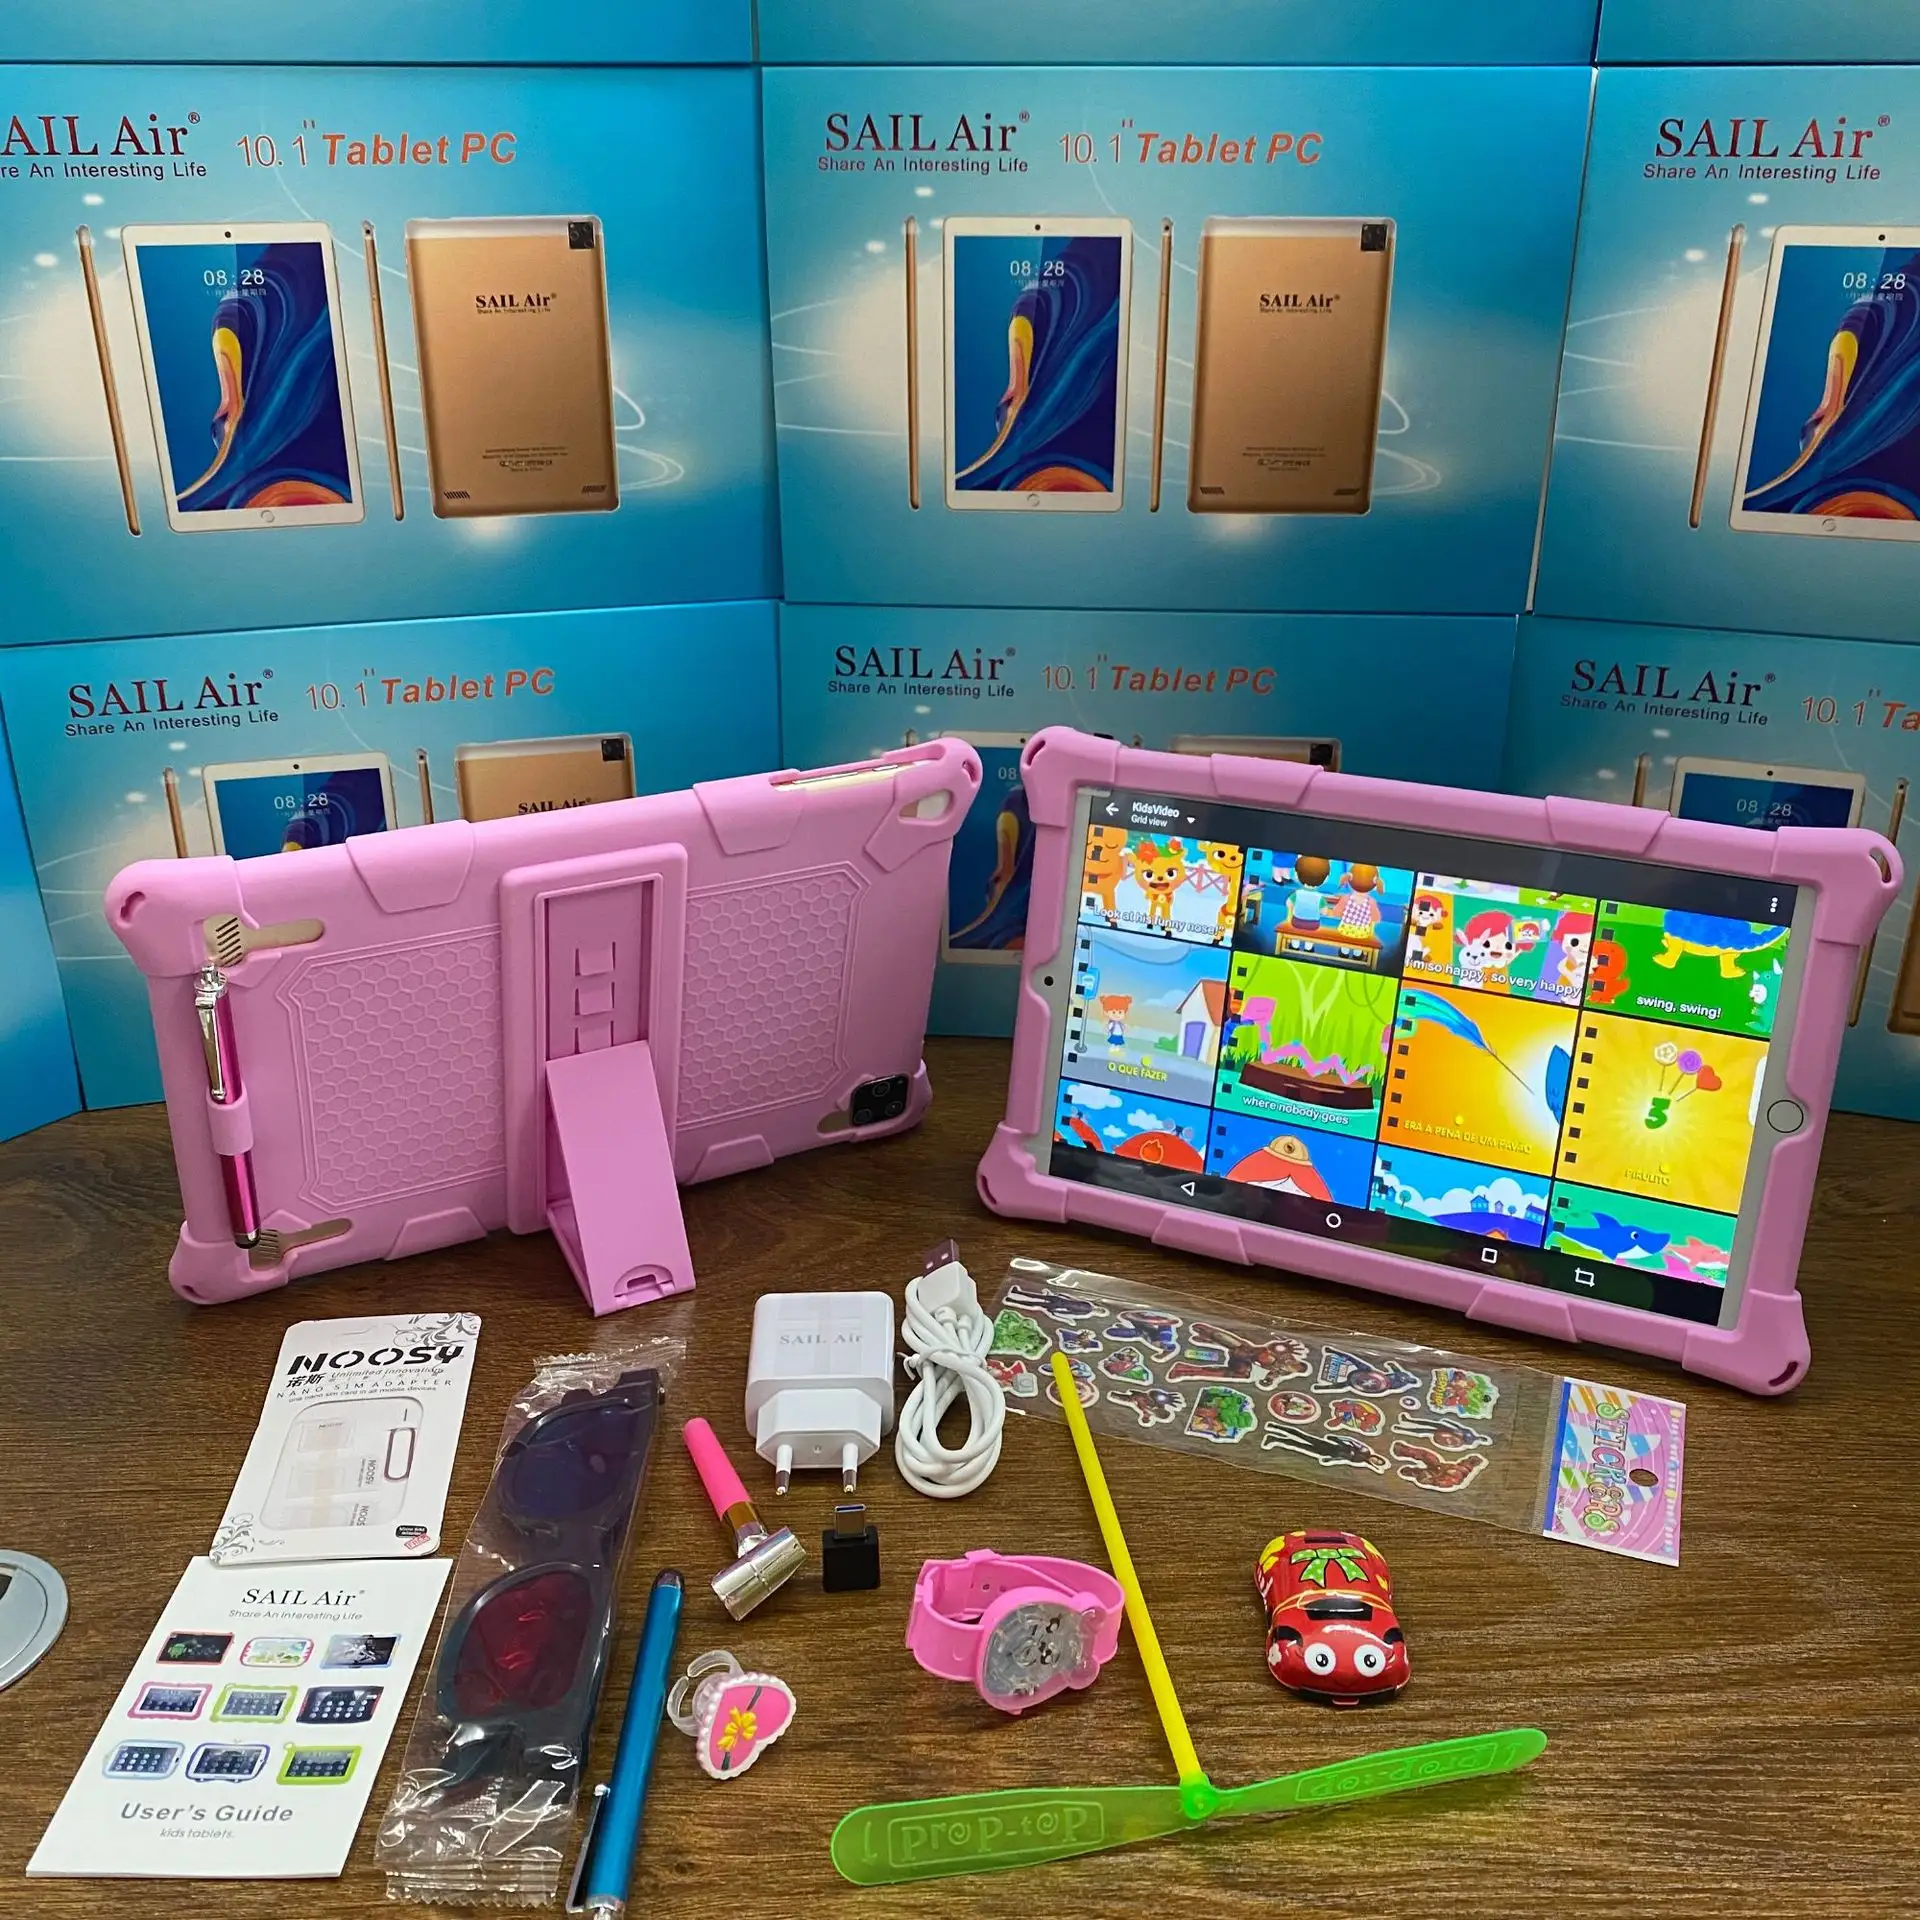 세계에서 가장 많이 팔리는 태블릿인 SAIL Air 107 컴퓨터는 홀스터가 달린 어린이용 상업용 태블릿을 출시합니다.